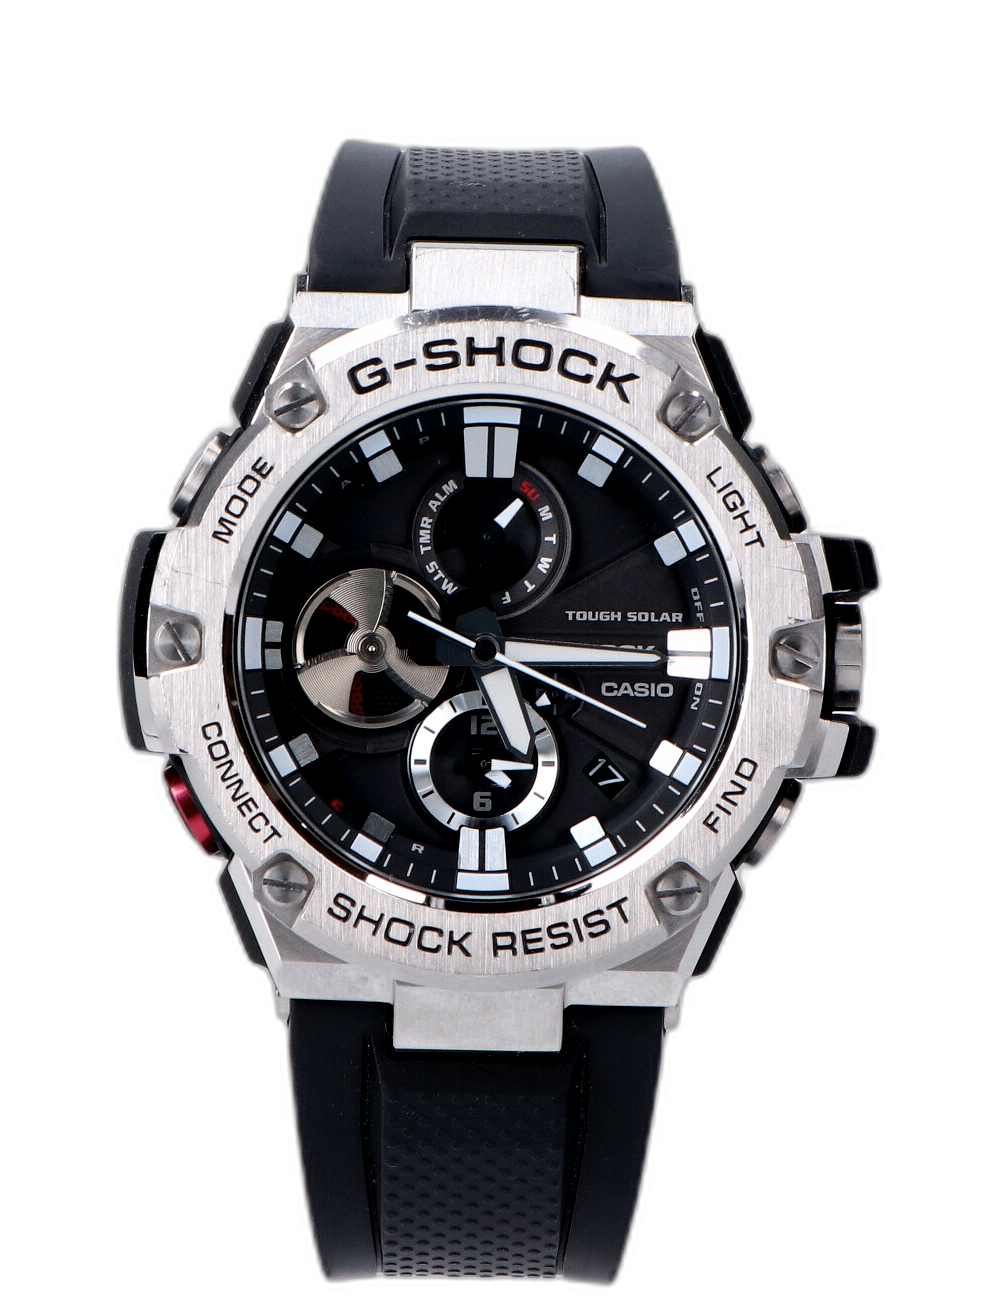 Casio G-Shock G-Steel (GSTB100) Price Guide & Market Data